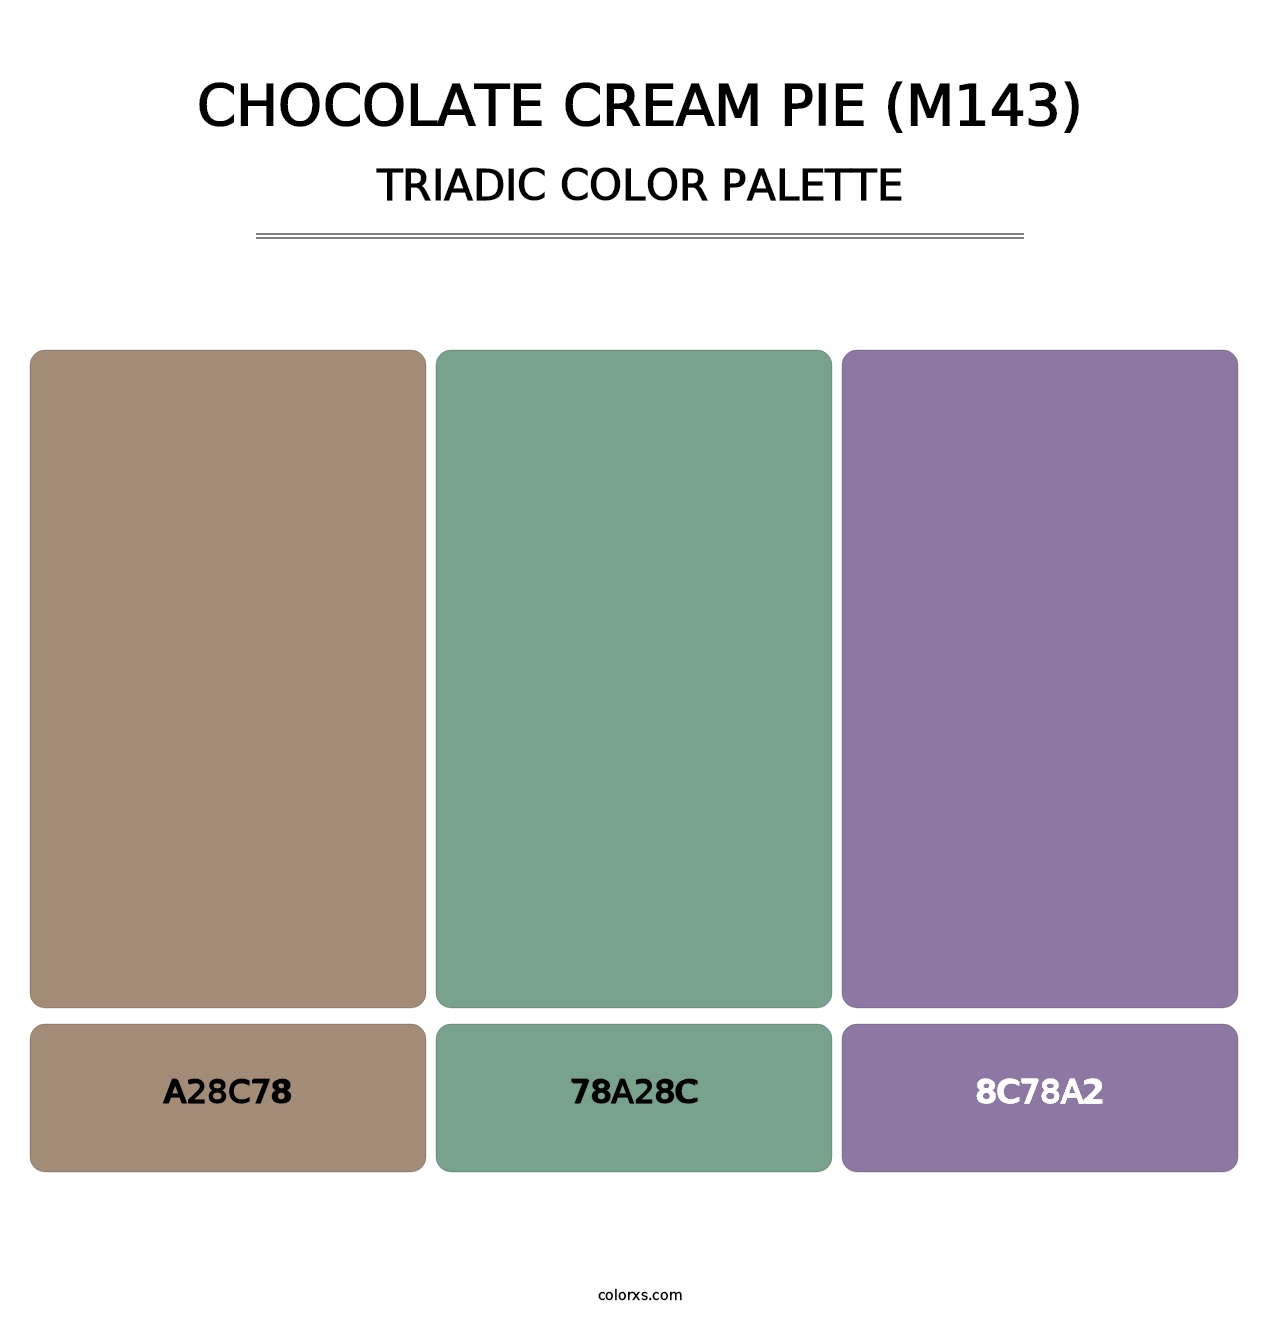 Chocolate Cream Pie (M143) - Triadic Color Palette